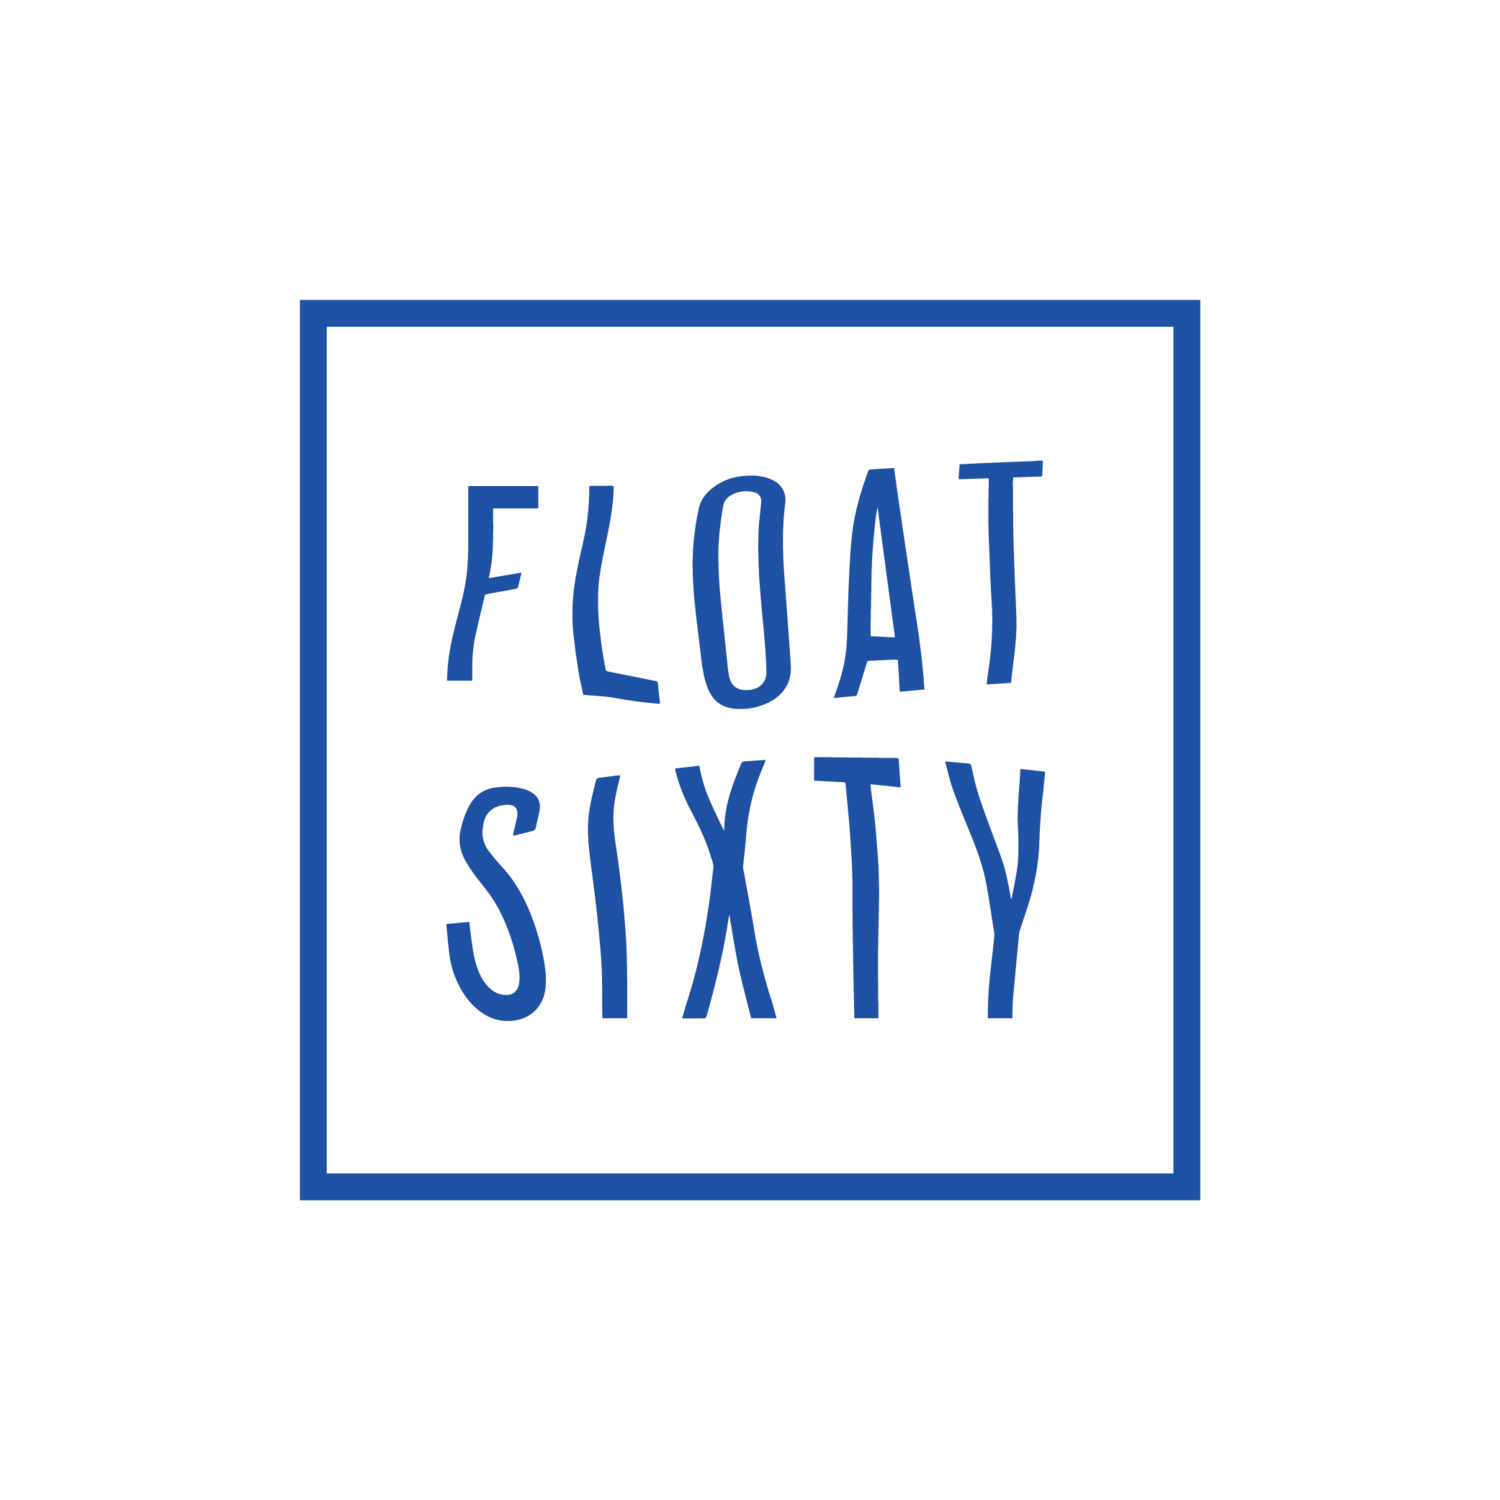 www.floatsixty.com